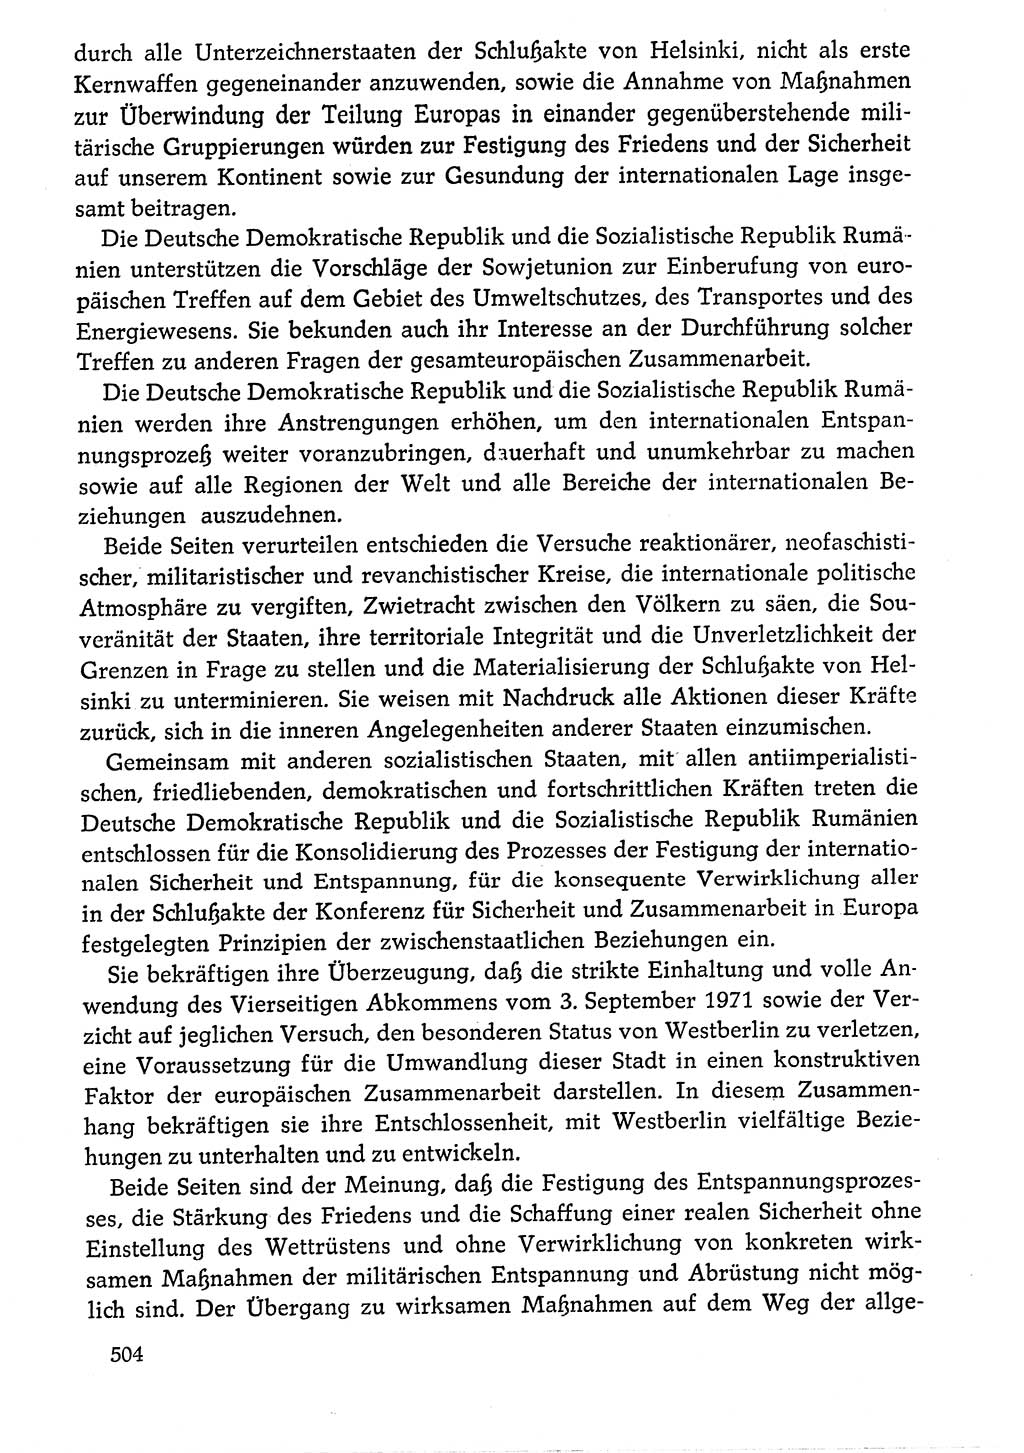 Dokumente der Sozialistischen Einheitspartei Deutschlands (SED) [Deutsche Demokratische Republik (DDR)] 1976-1977, Seite 504 (Dok. SED DDR 1976-1977, S. 504)